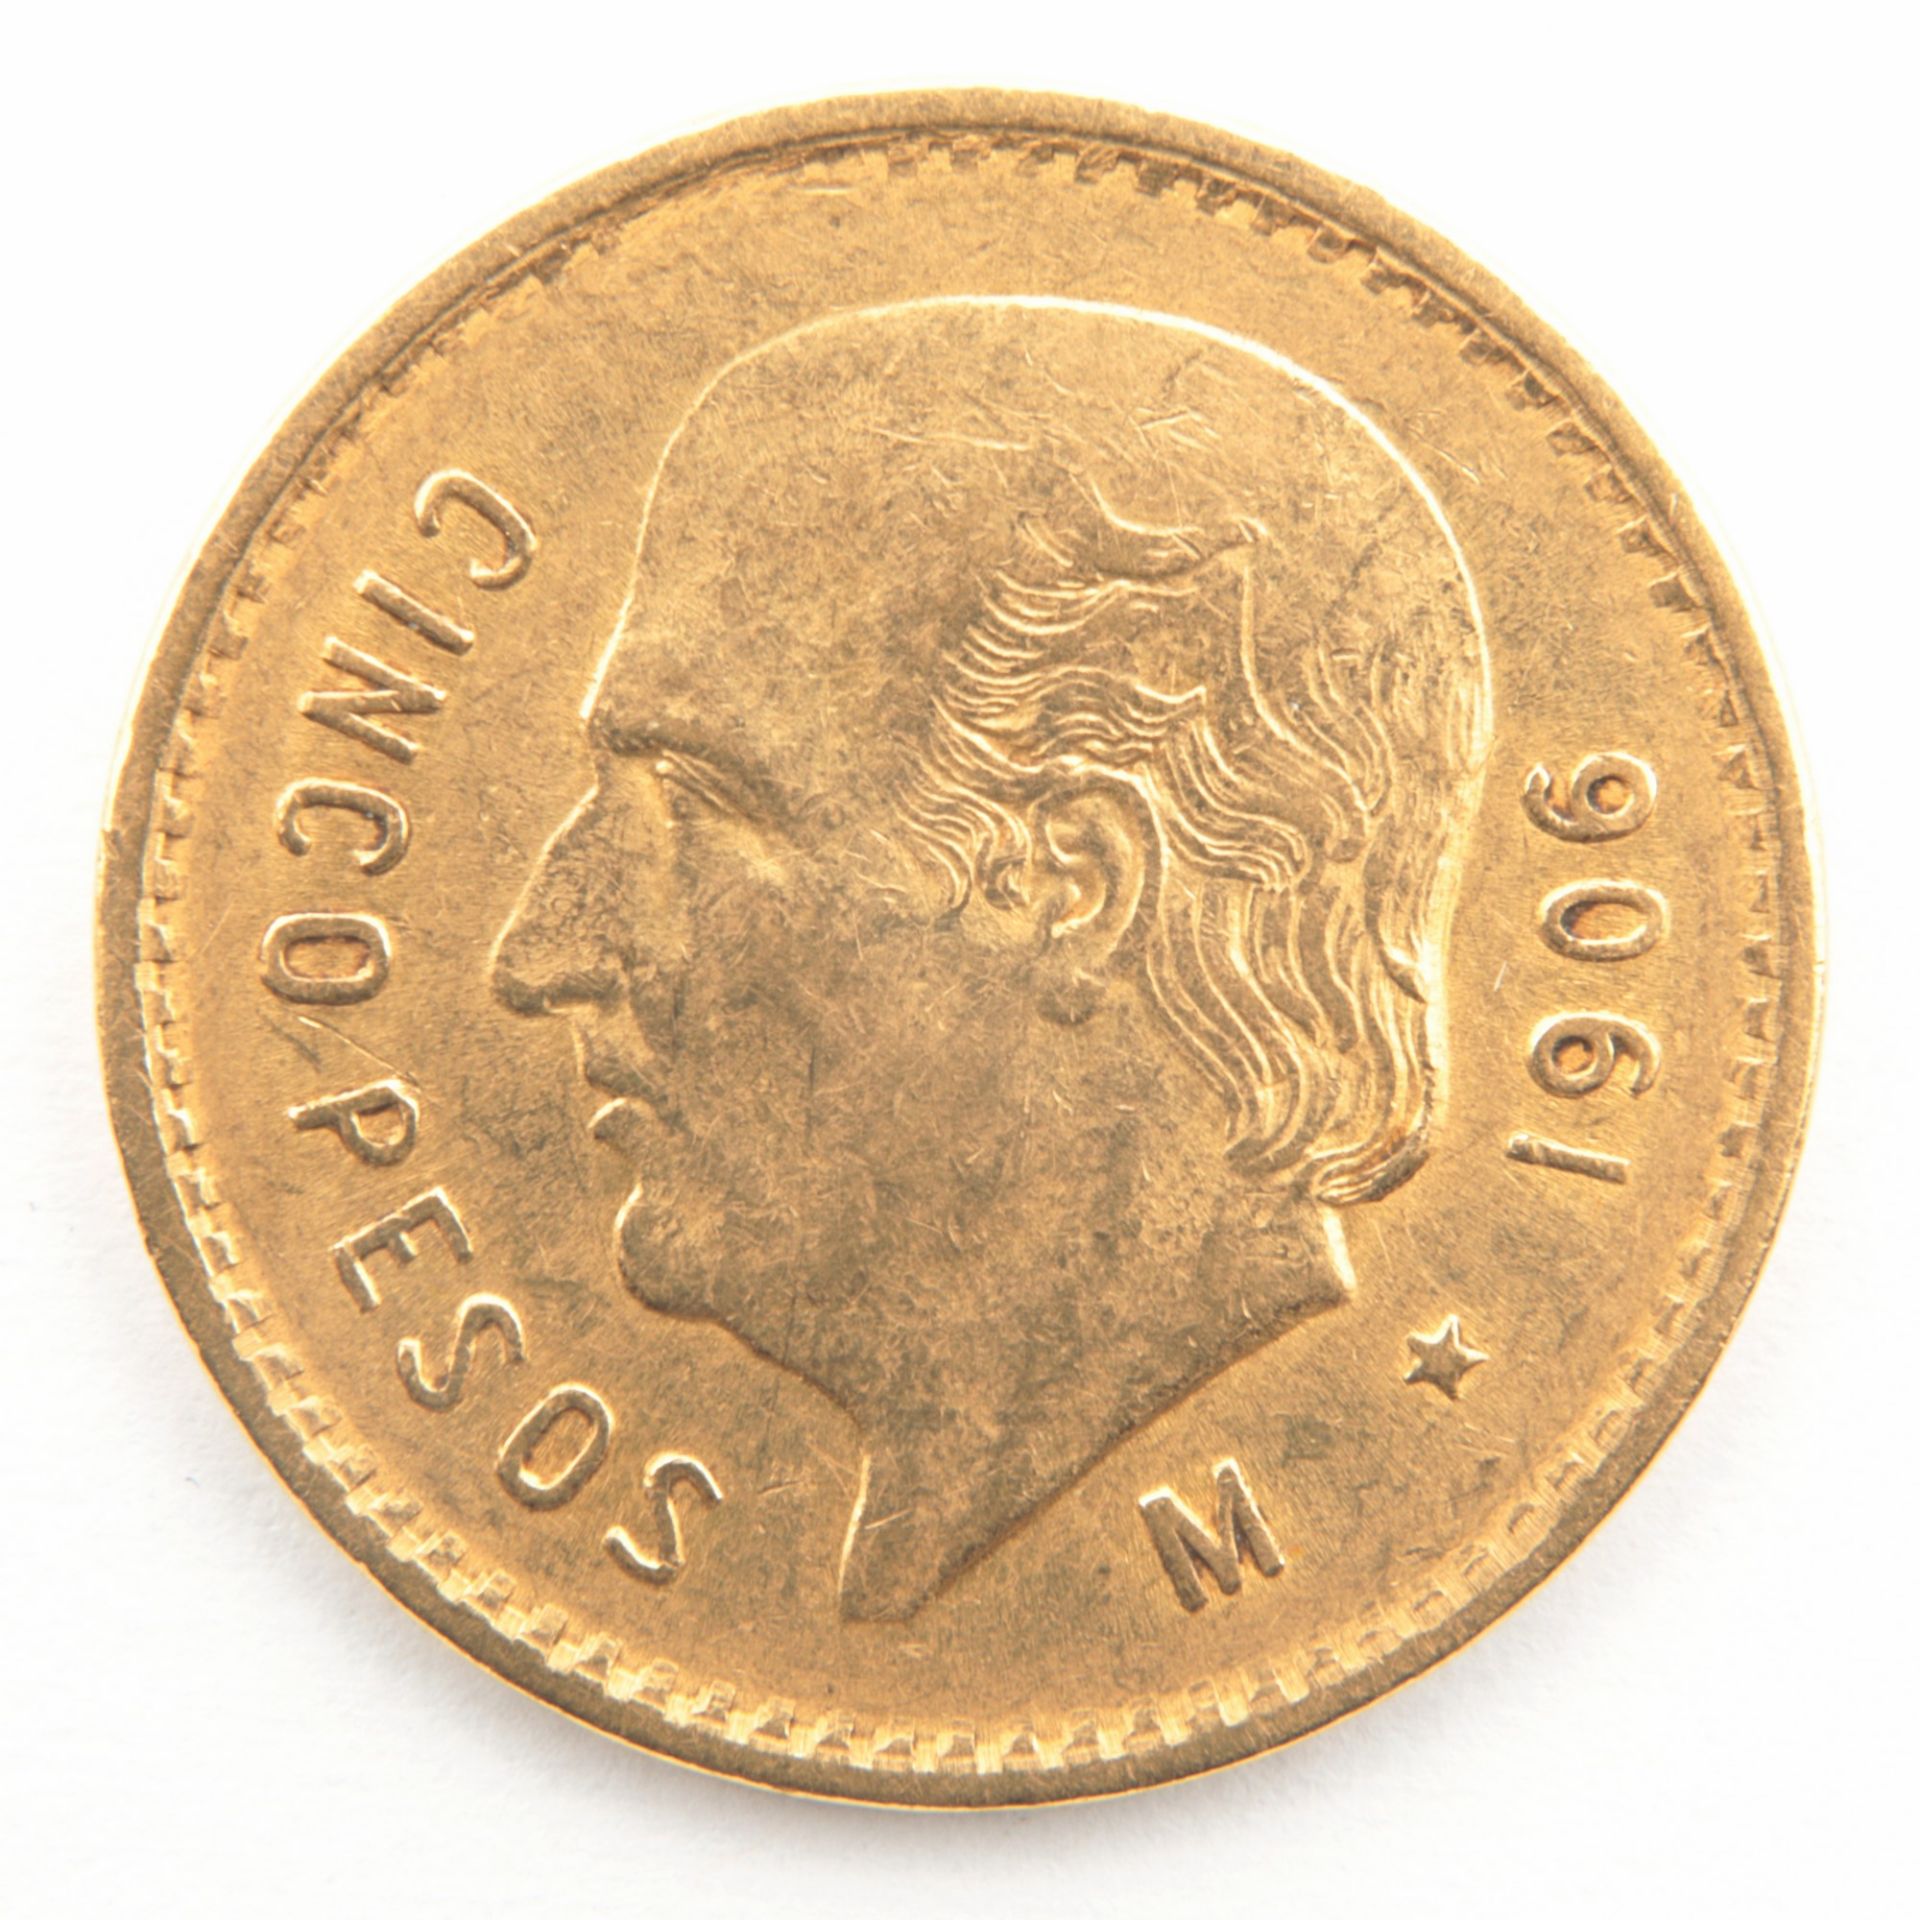 Goldmünze - Cinco Pesos 1906, Mexiko, Estados unidos Mexicanos/Vereinigten Mexikanischen Staaten (